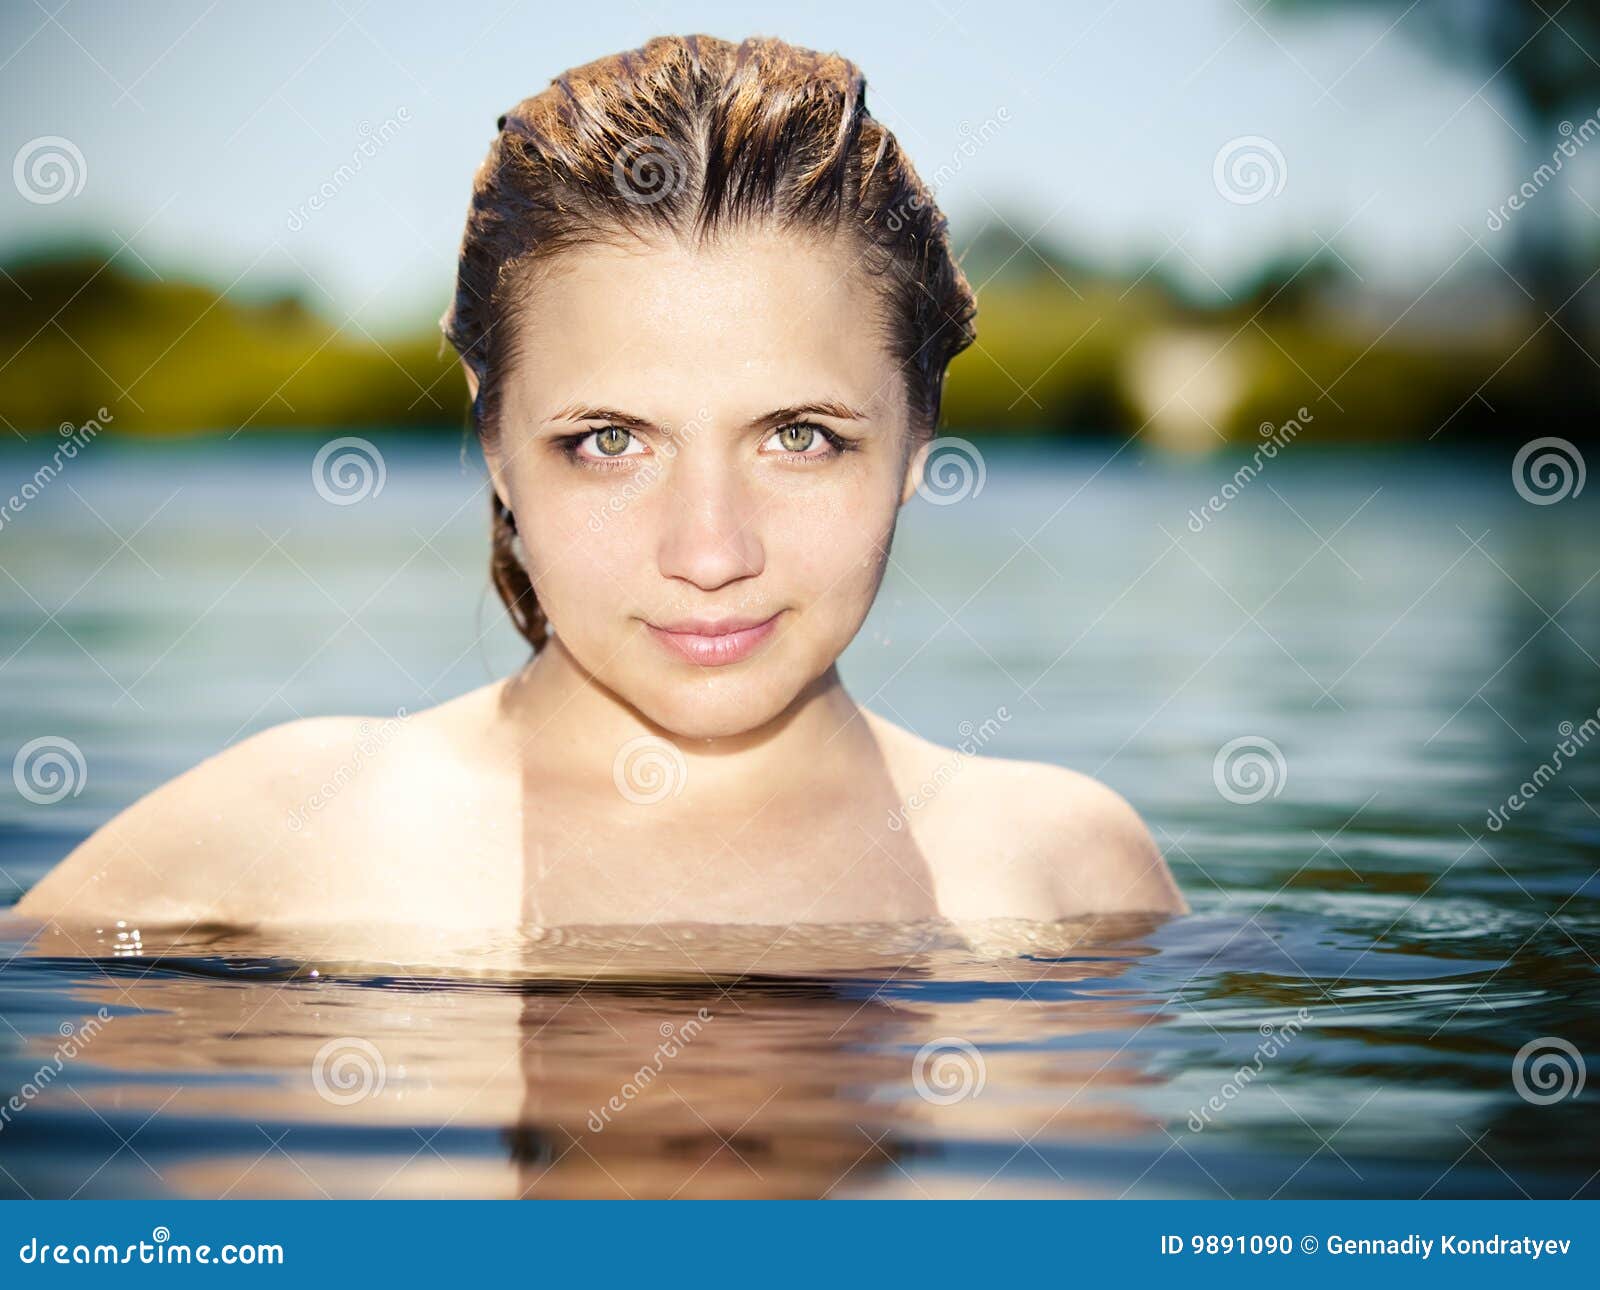 Jong Meisje In Het Water Met Naakte Schouders Stock Foto Image Of